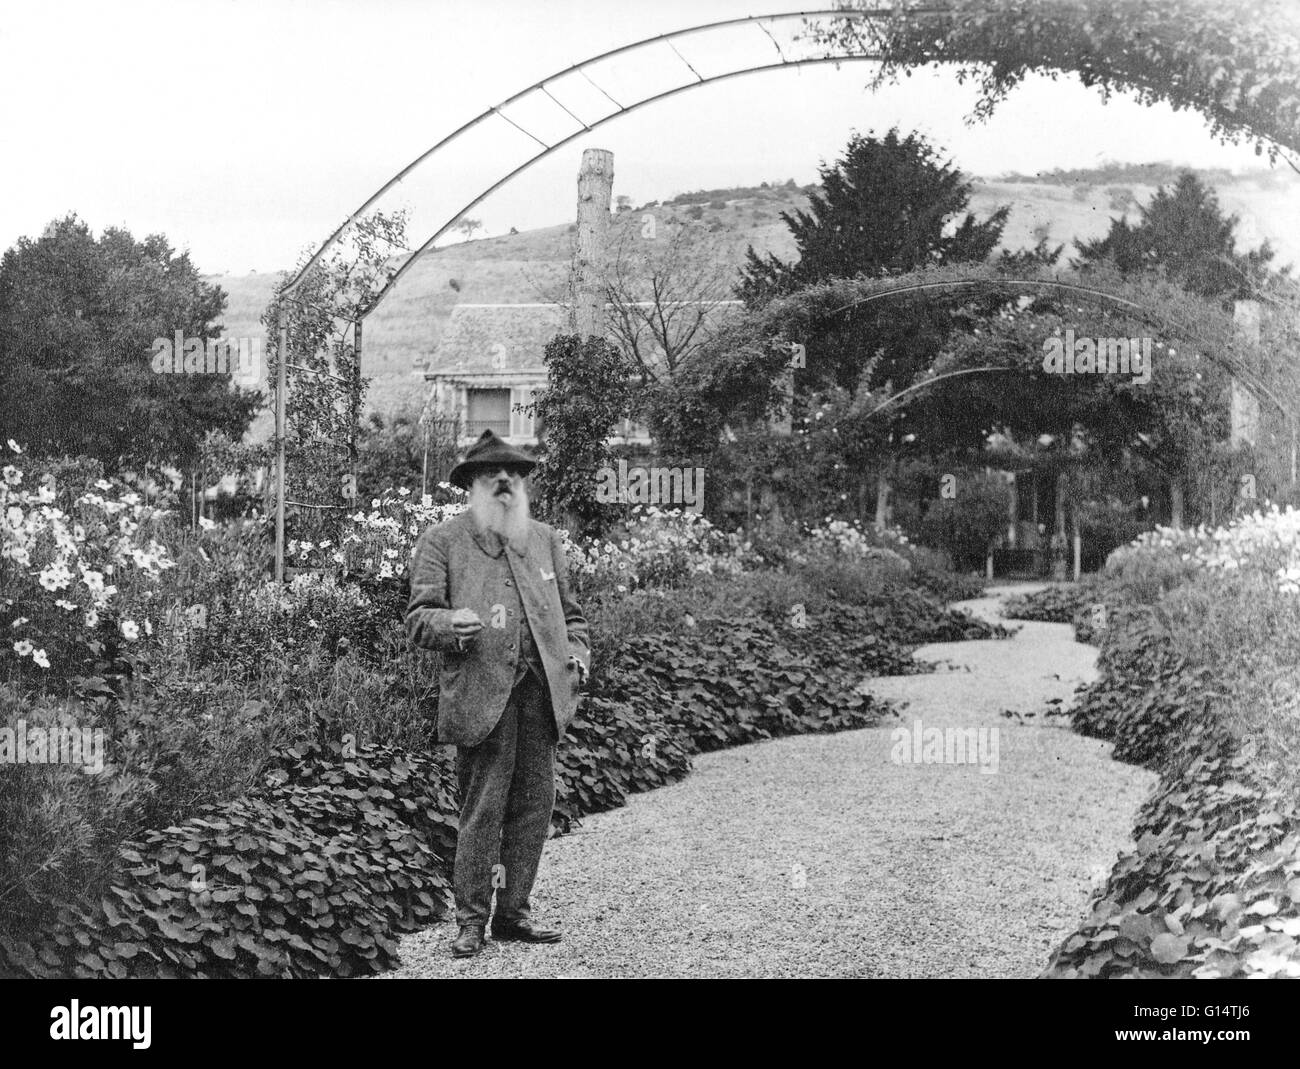 Claude Monet stehend in einem Garten in Giverny, Frankreich. Der Maler in Giverny 43 Jahre lang lebte und malte die Gärten, für die er berühmt ist. Monet, fotografiert von Nadar im Jahre 1901. Claude Monet (1840-1926) war einer der Gründer der französischen impressionistischen Malerei, Stockfoto